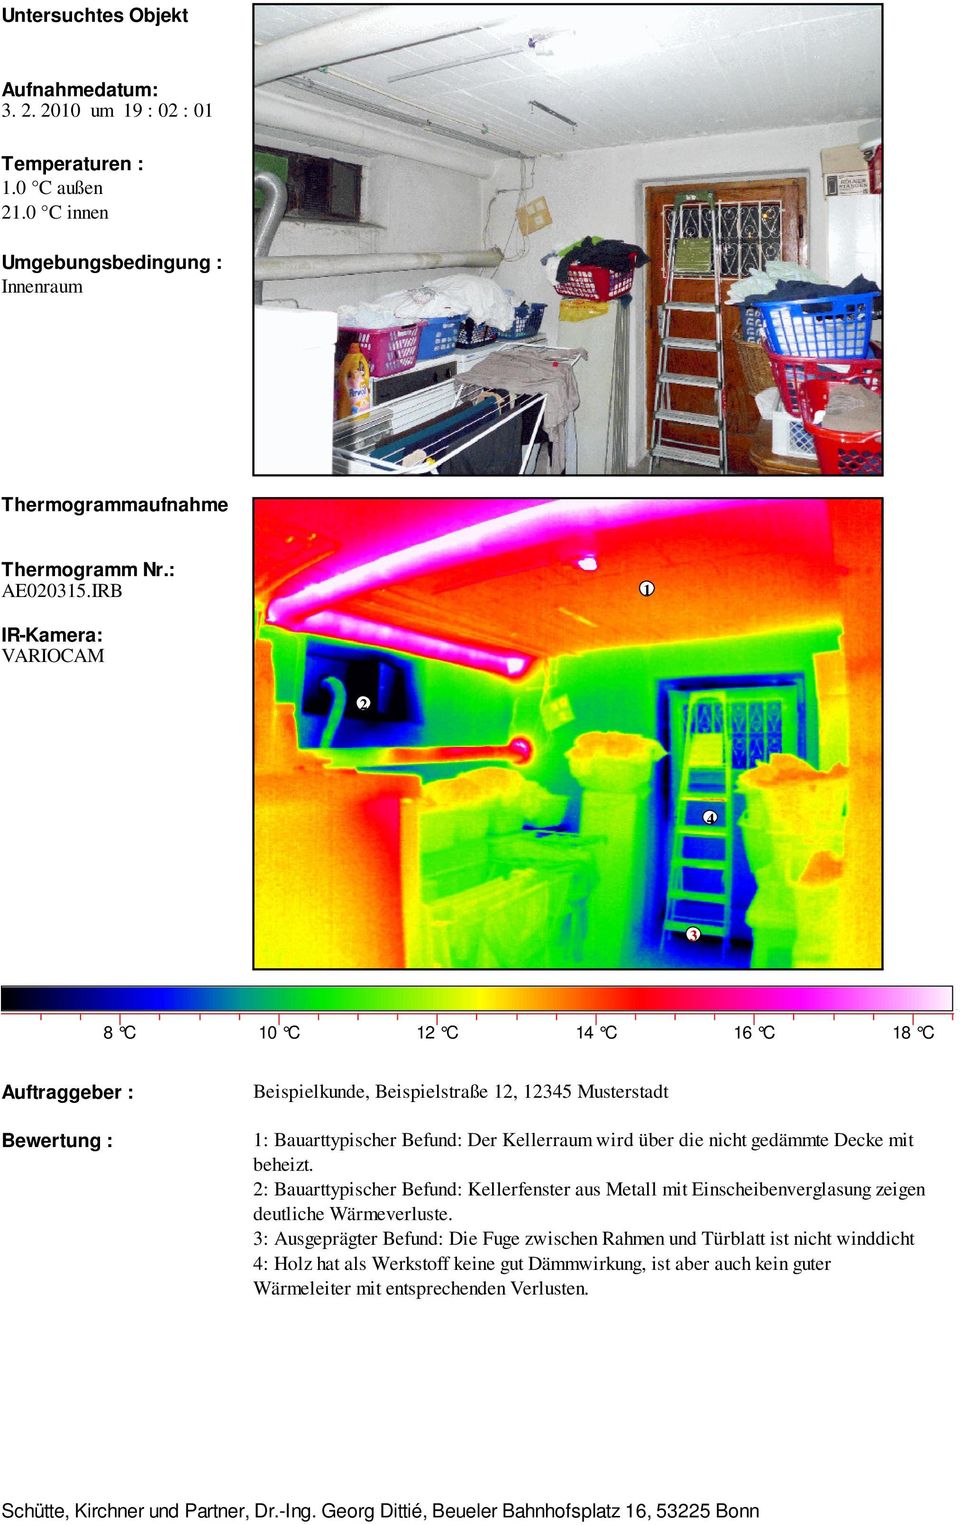 beheizt. : Bauarttypischer Befund: Kellerfenster aus Metall mit Einscheibenverglasung zeigen deutliche Wärmeverluste.